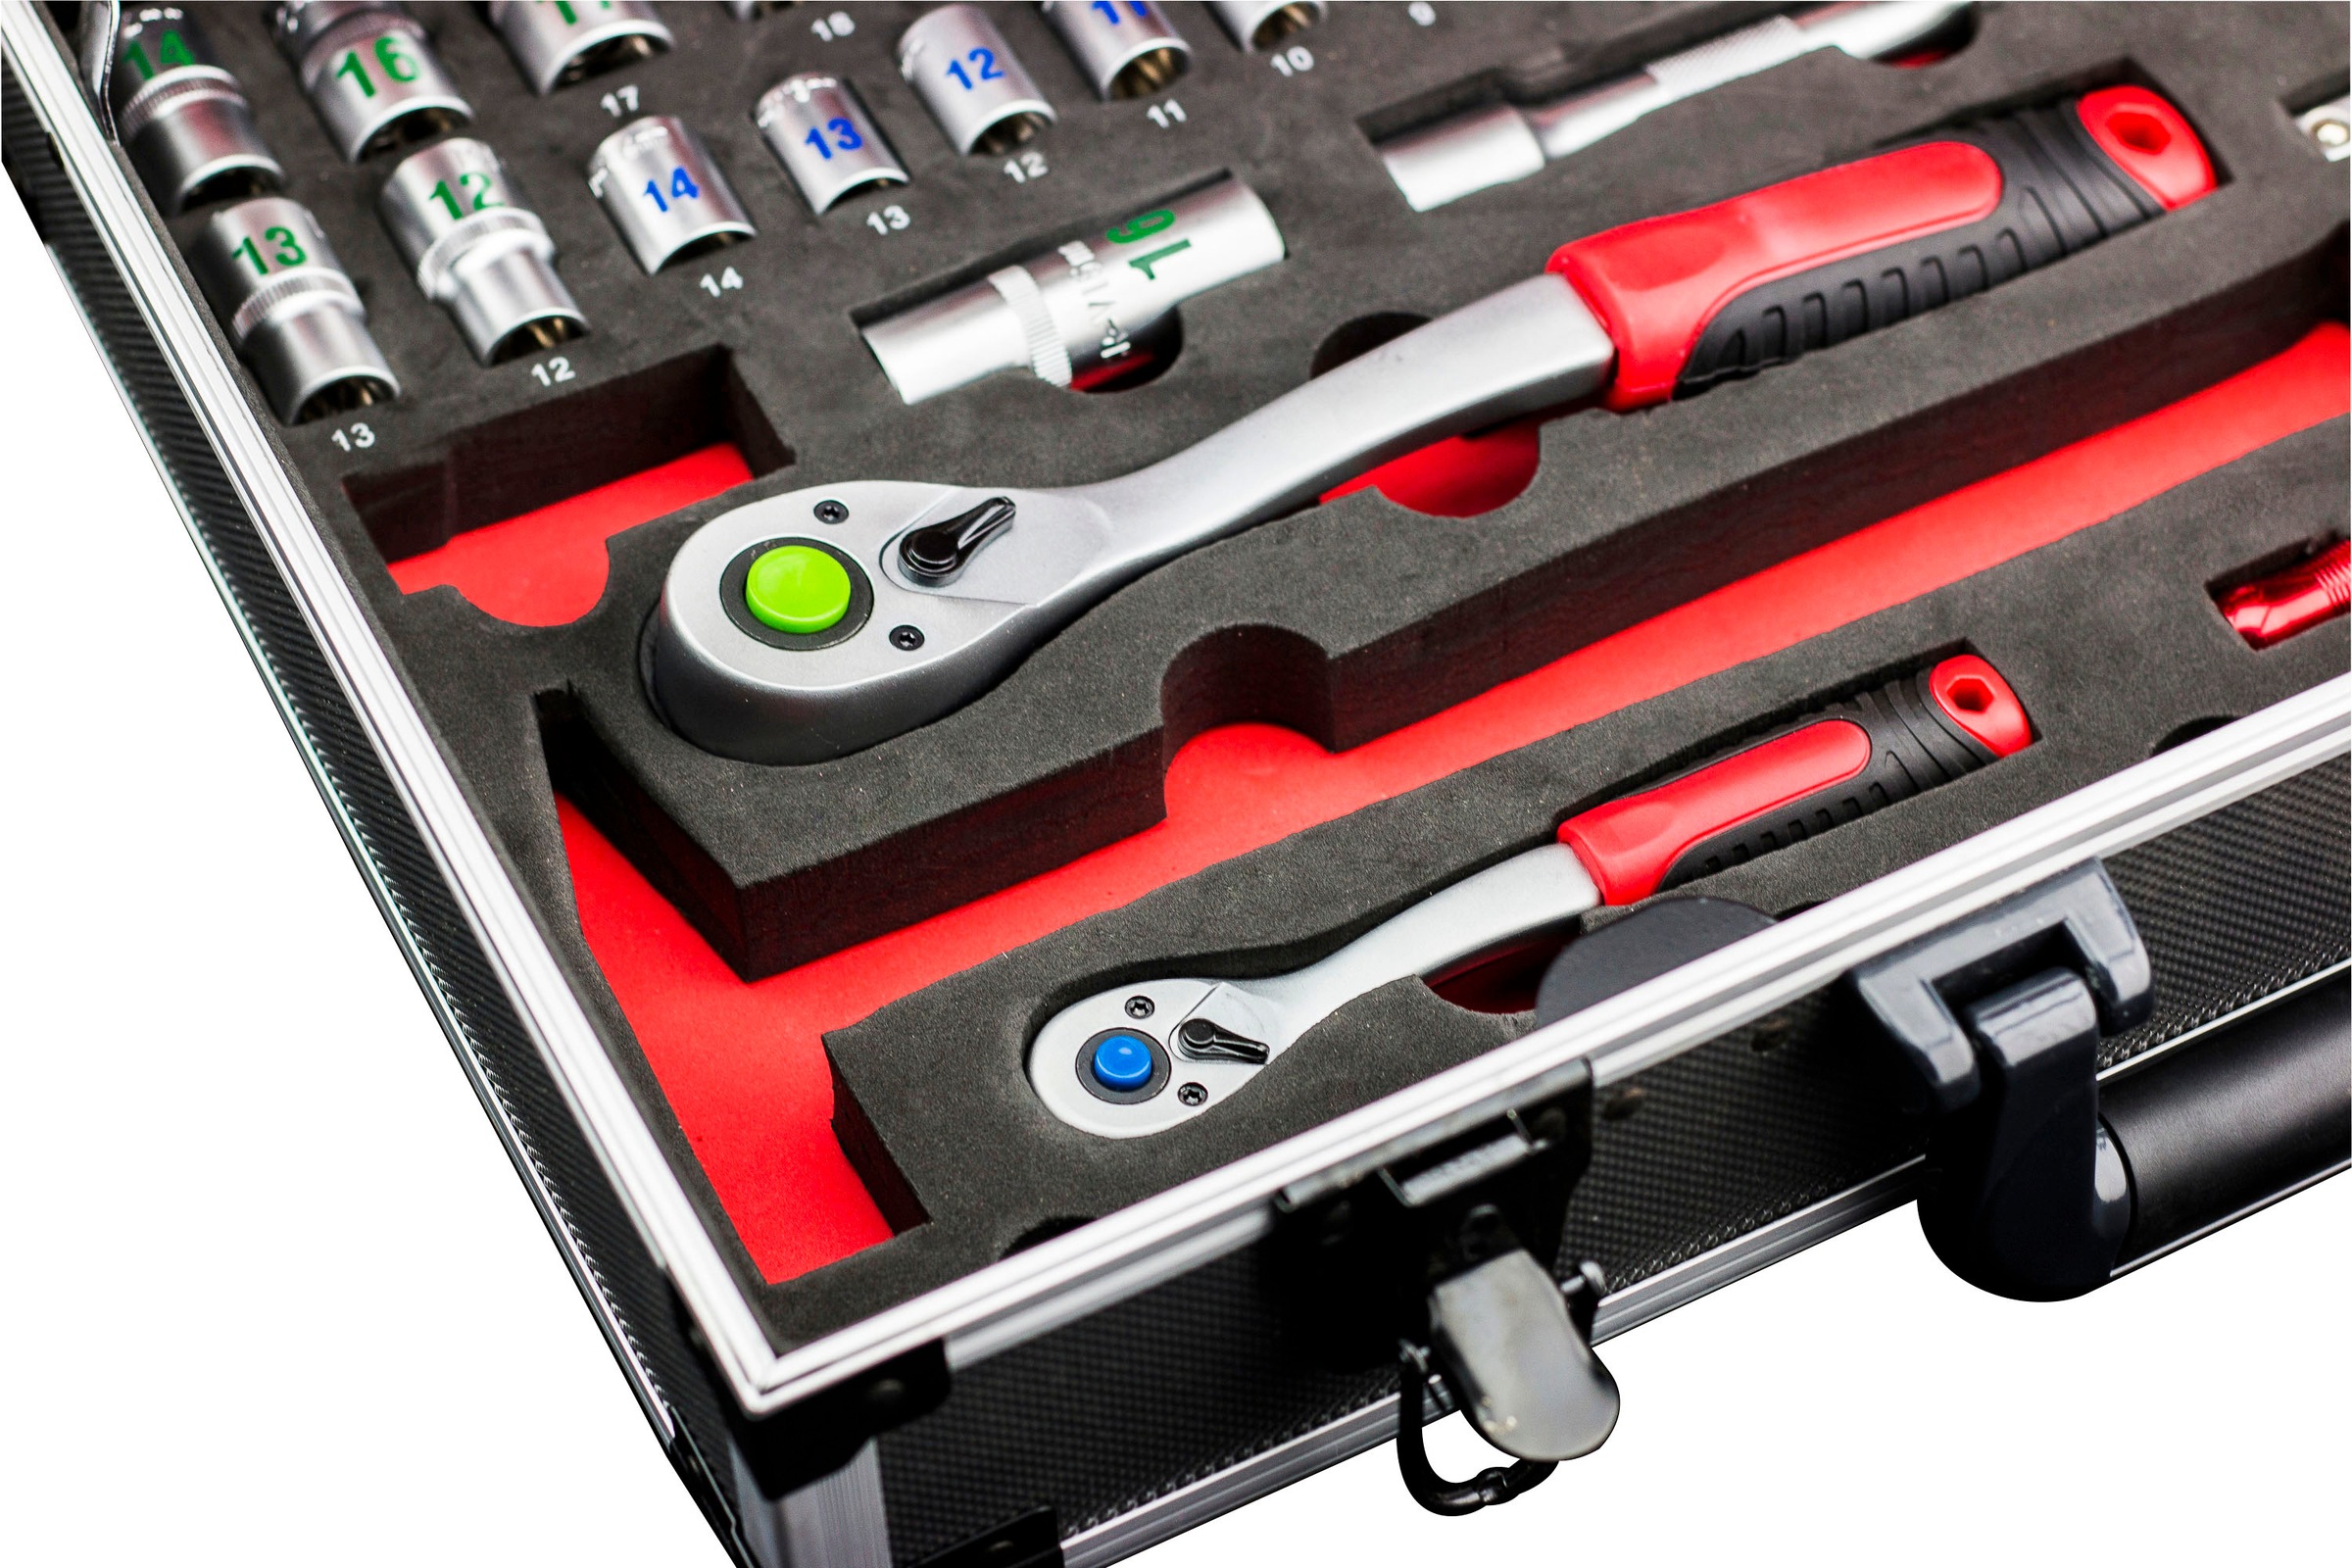 meister Werkzeugset »Profi Werkzeugkoffer / 8973750«, 131-teilig, mit Qualitätswerkzeug von Knipex & Wera, Alu-Koffer